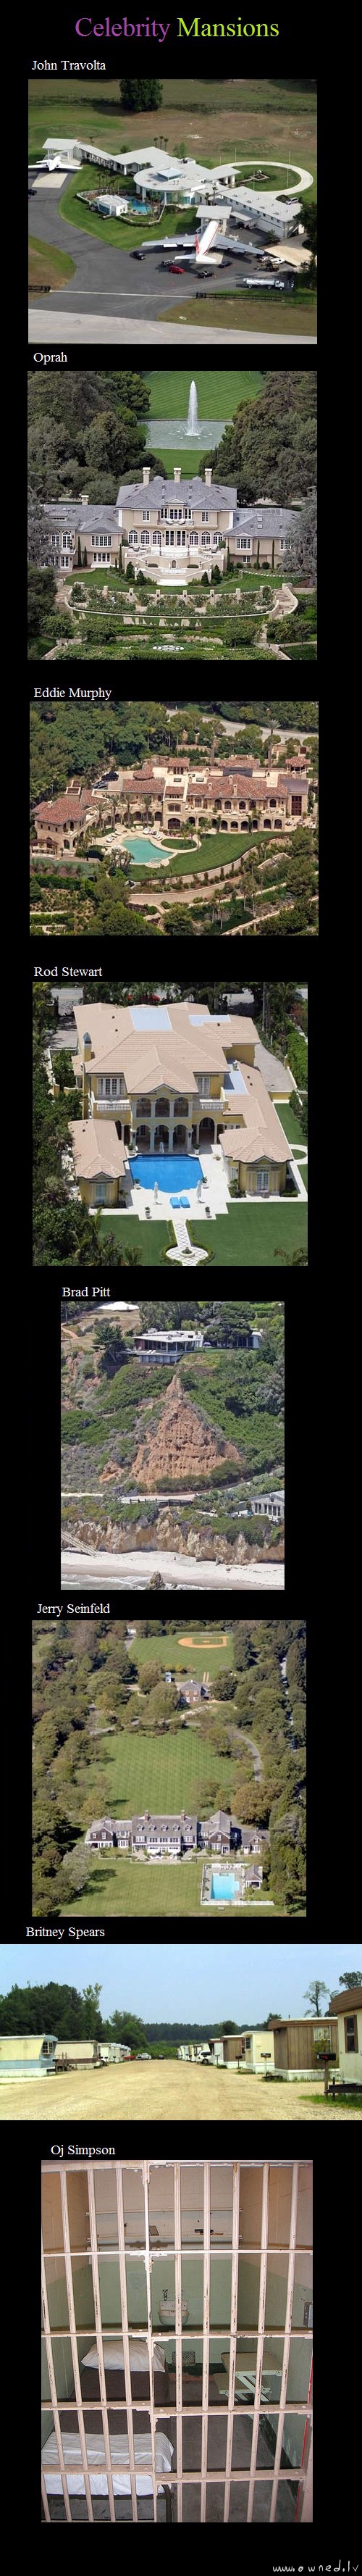 Celebrity mansions